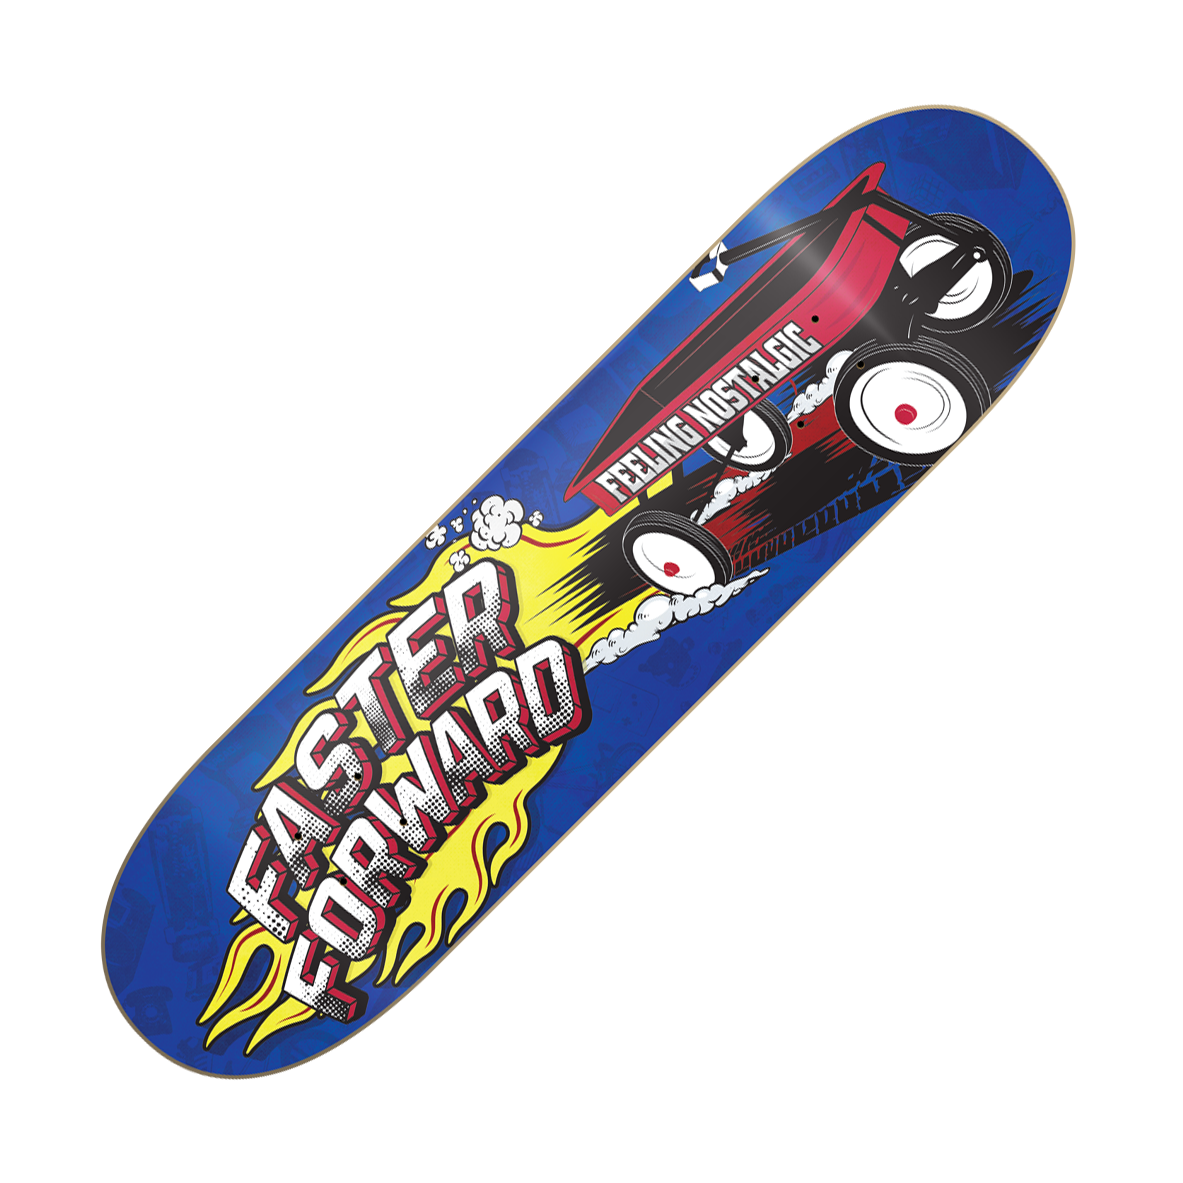 FASTERFORWARD - "Feeling Nostalgic" (Skateboard Deck)